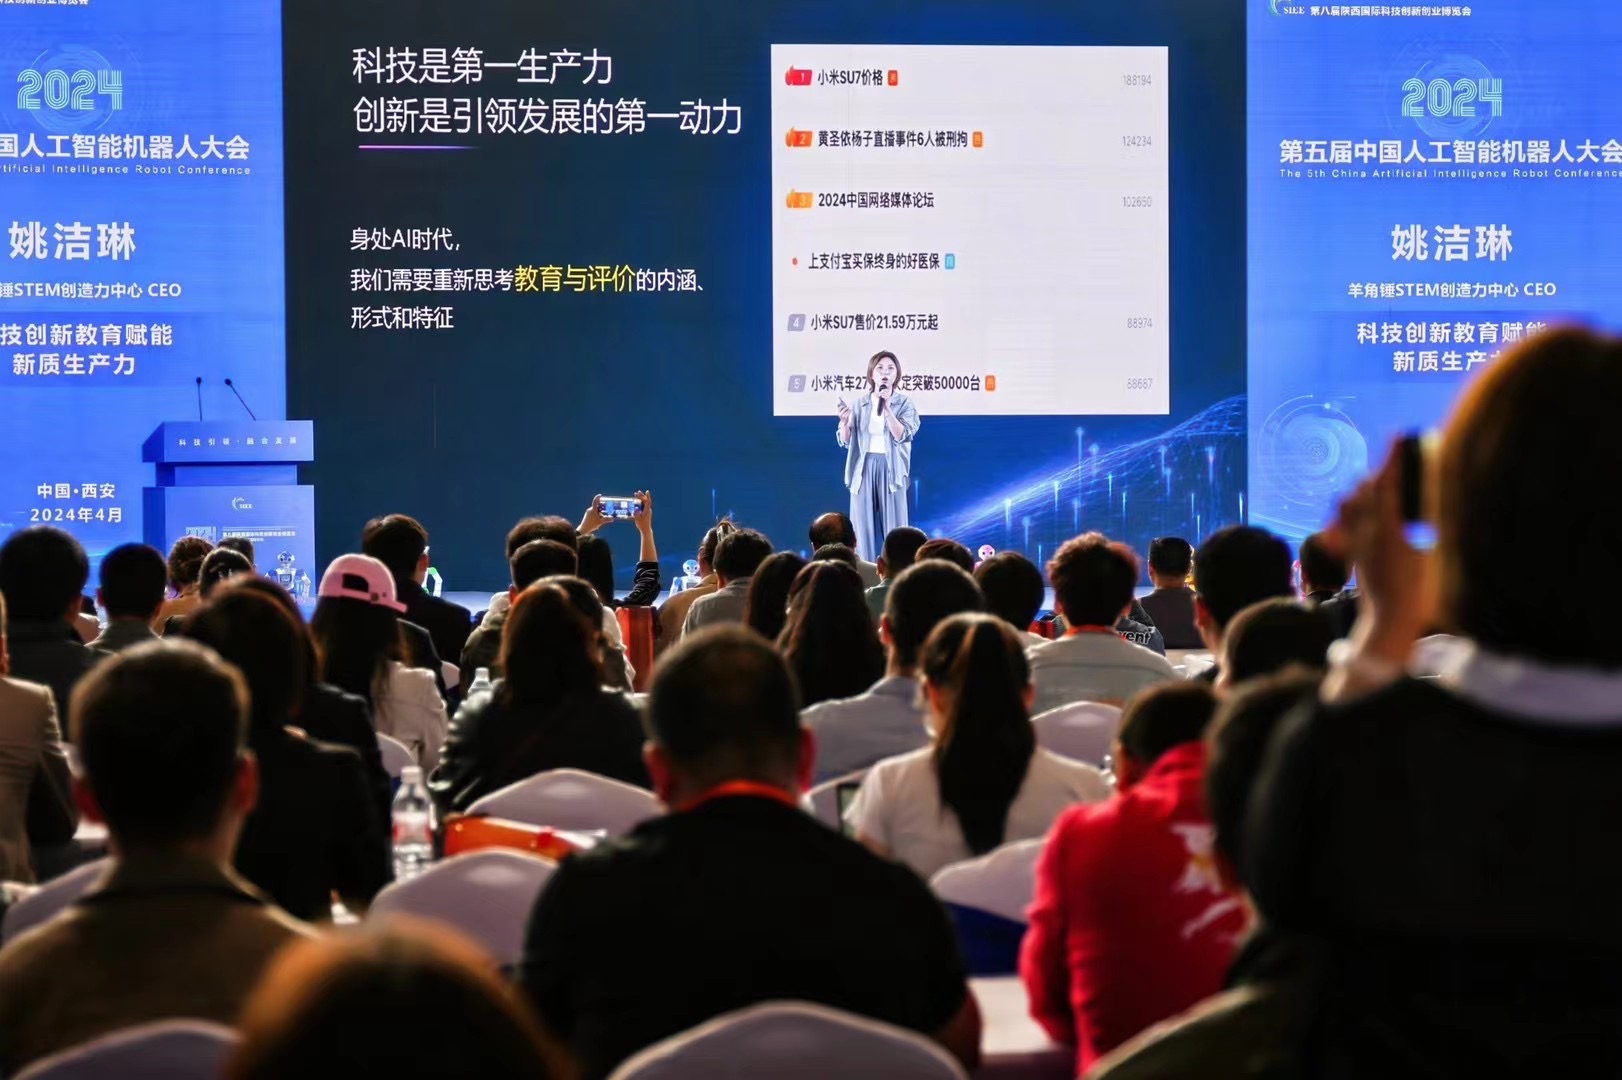 羊角锤杯STEM教育创新挑战赛启动仪式亮相第八届陕西国际科创博览会